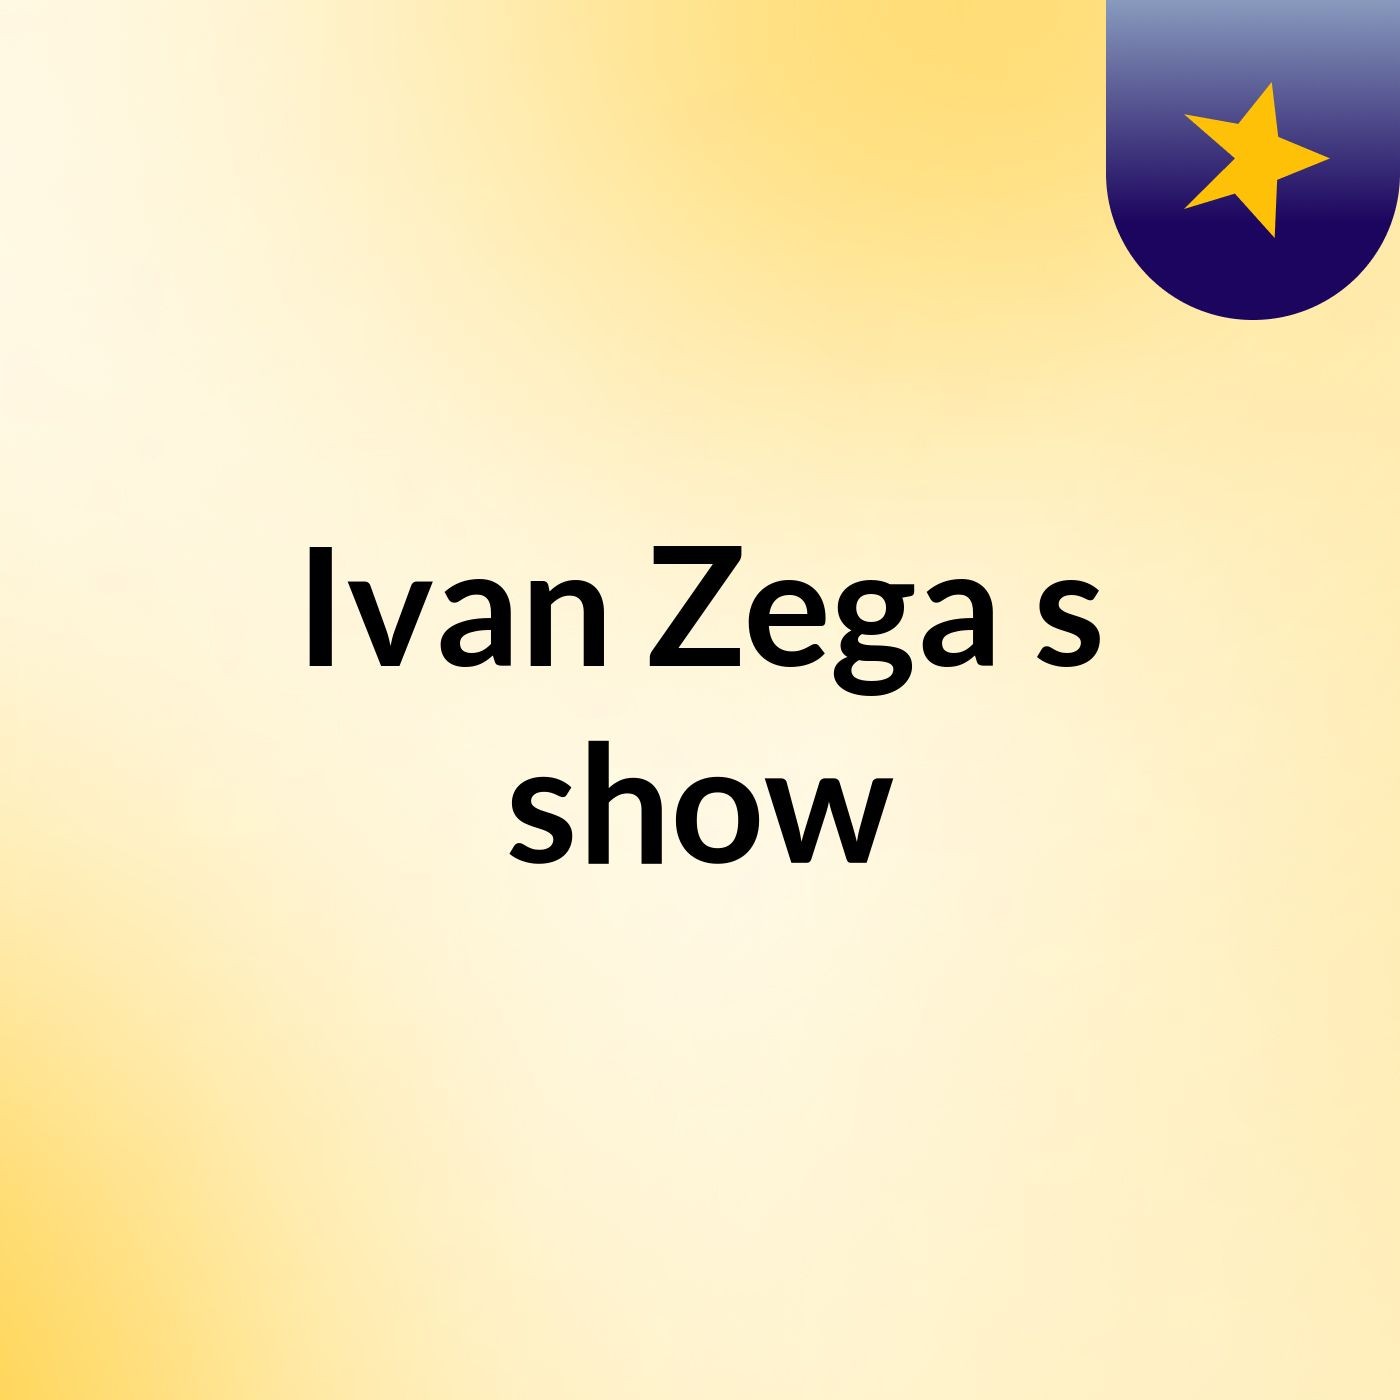 Ivan Zega's show